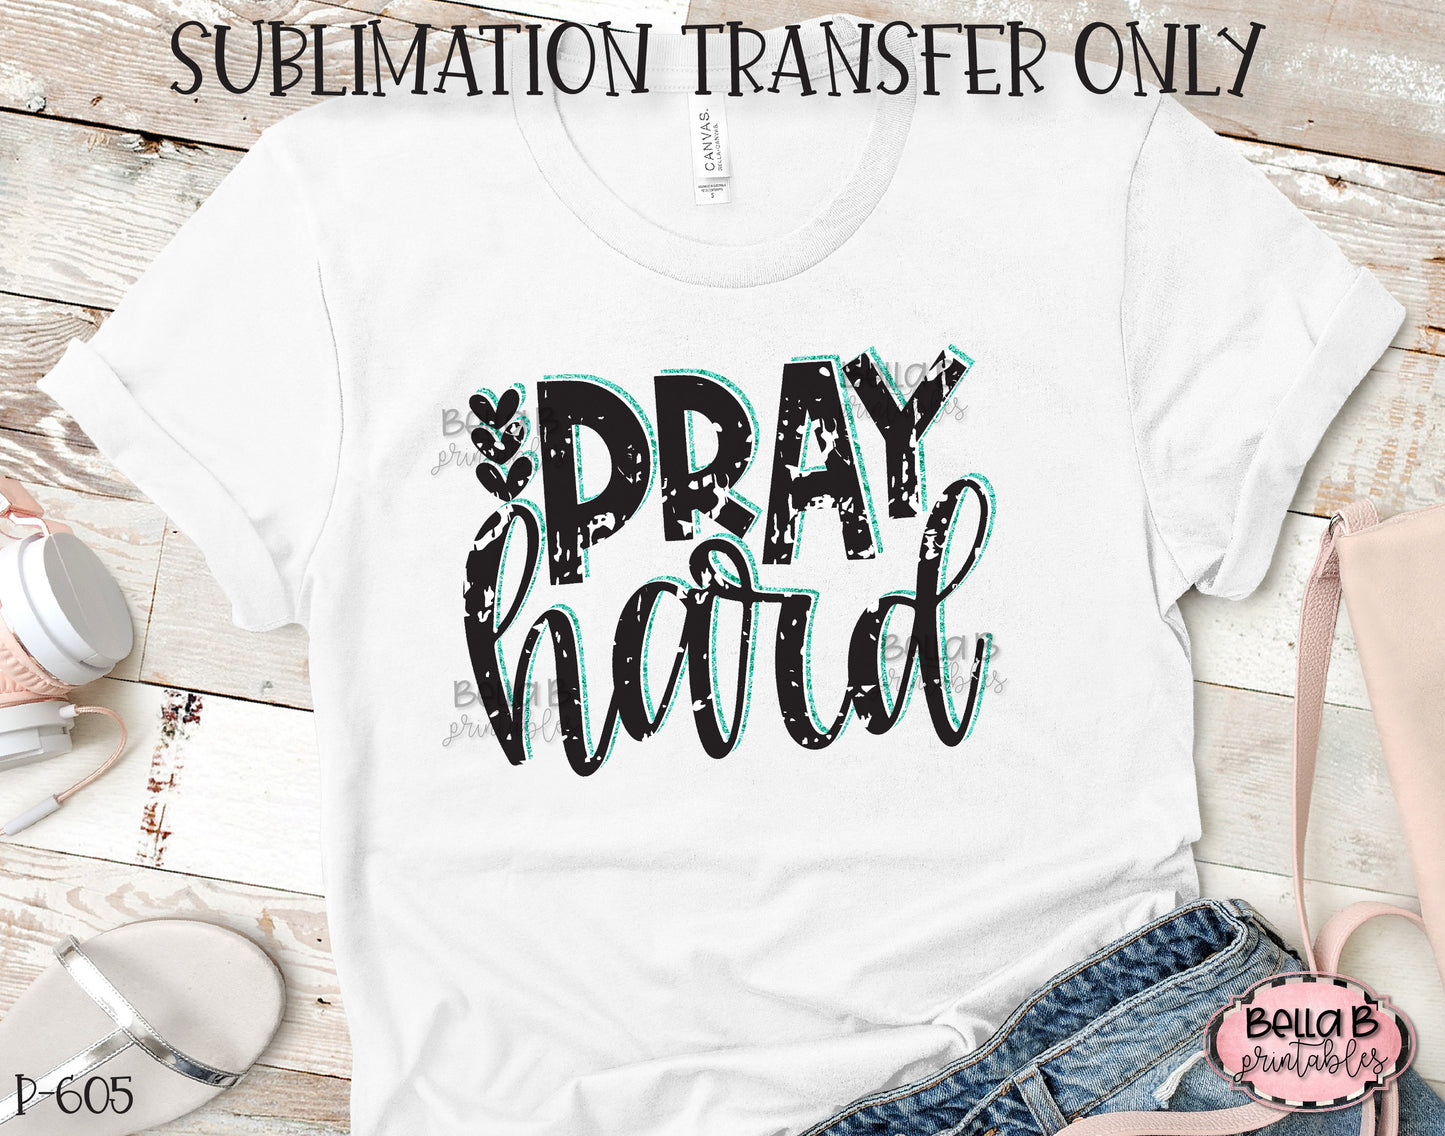 Pray Hard Sublimation Transfer, Ready To Press, Heat Press Transfer, Sublimation Print